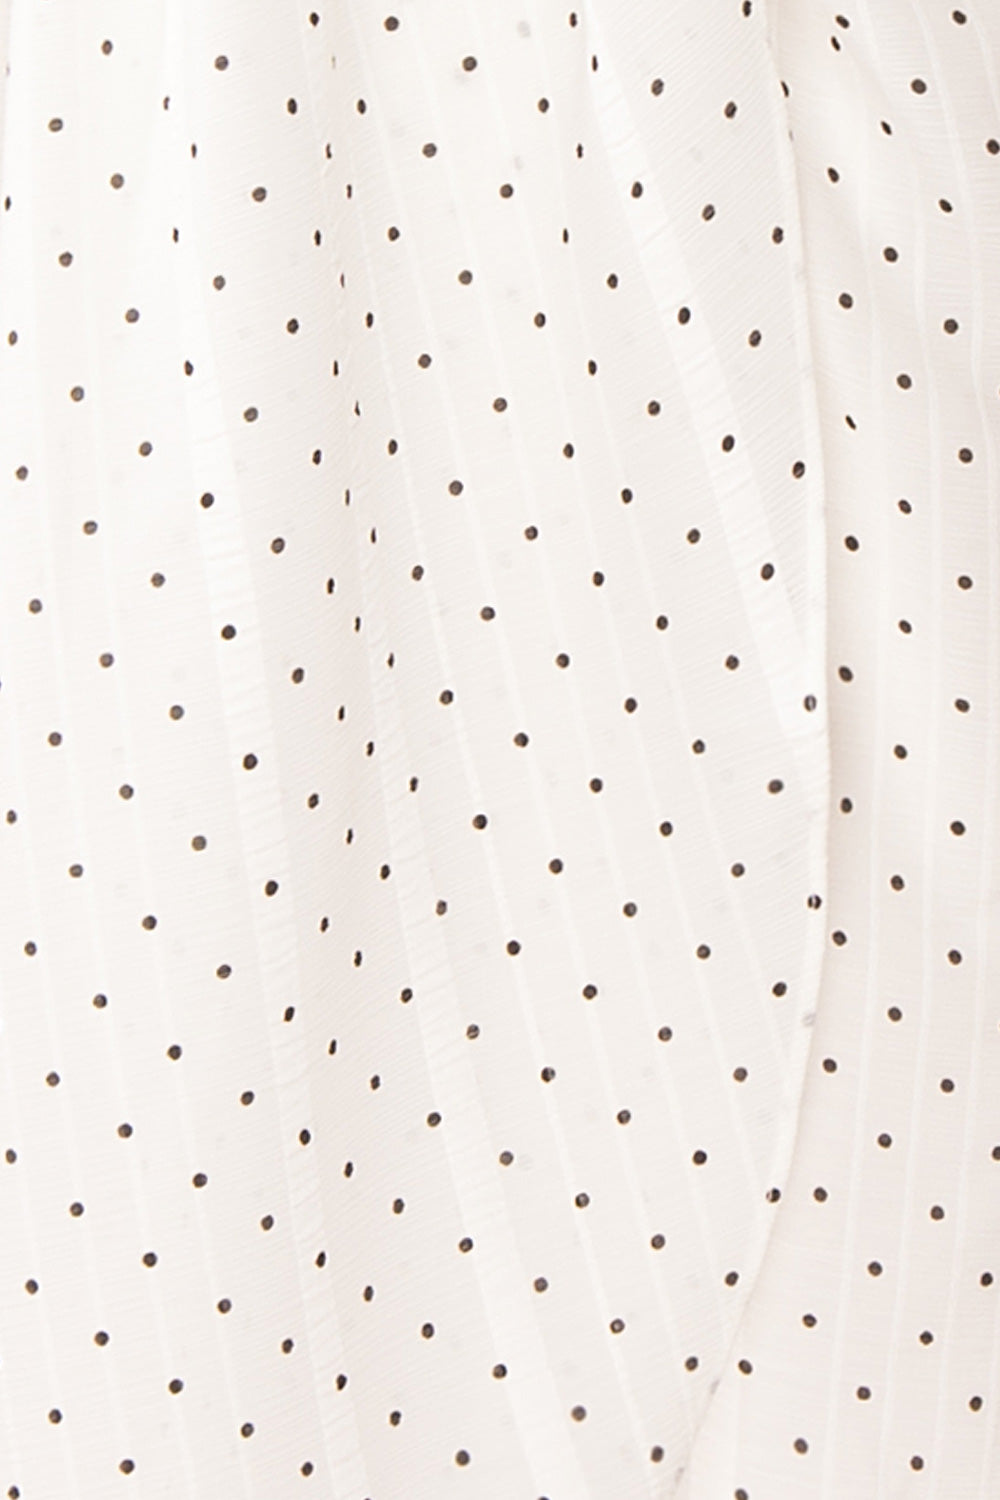 Asceline White Short Dress w/ Polka Dots | Boutique 1861 fabric details